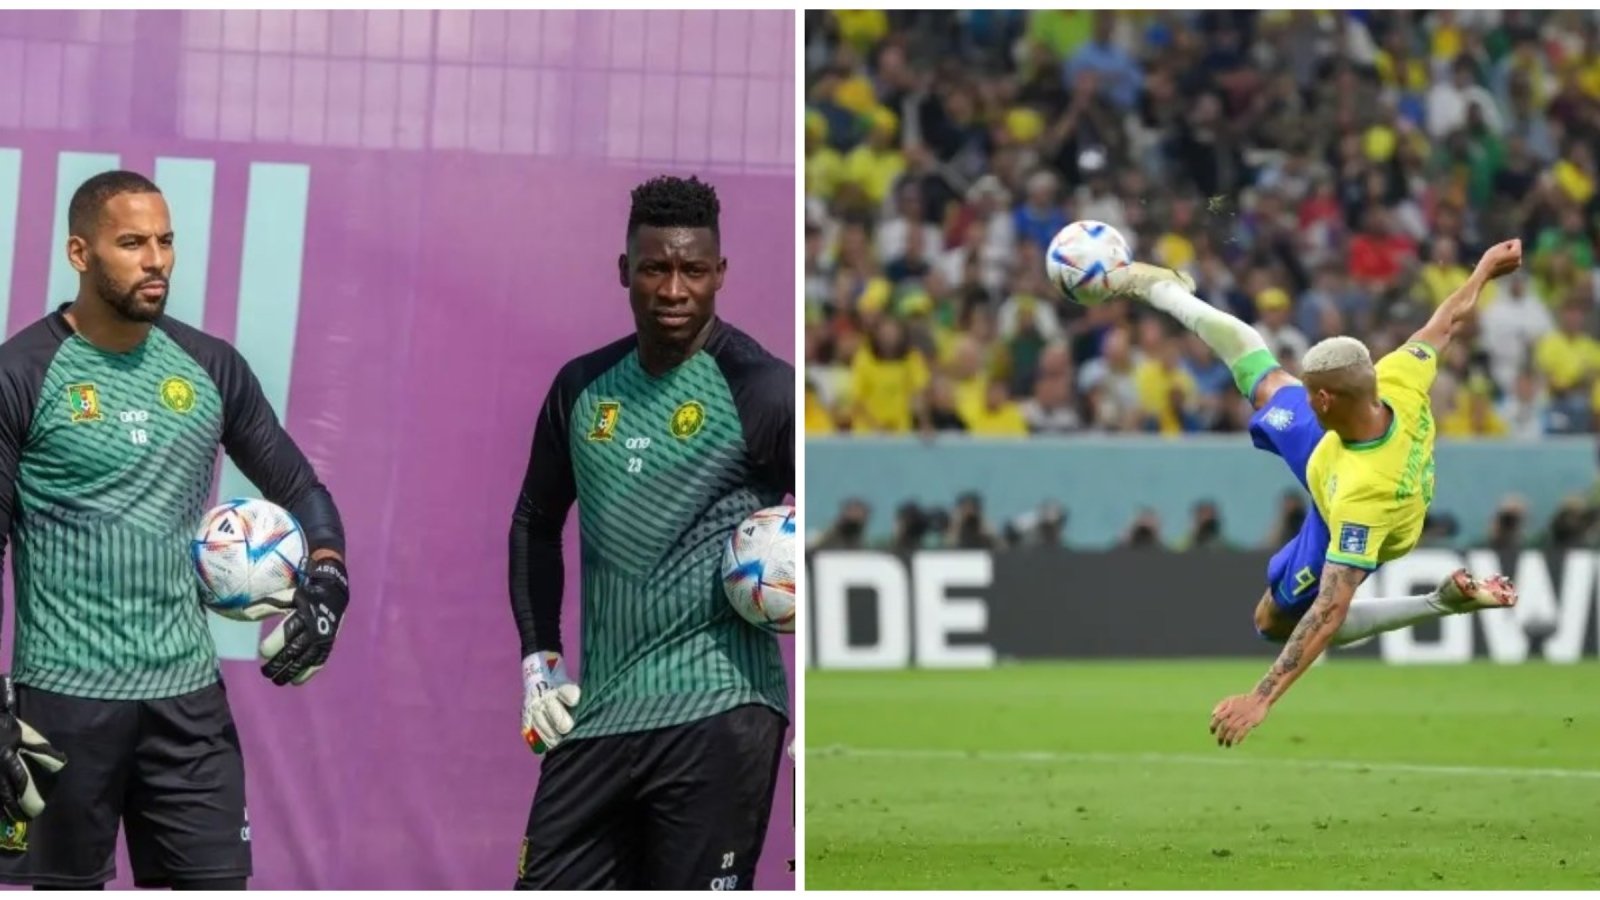 Камерун Бразилия 1:0 — смотреть онлайн футбол — прямая трансляция  Чемпионата мира 2022 2 декабря - Телеграф